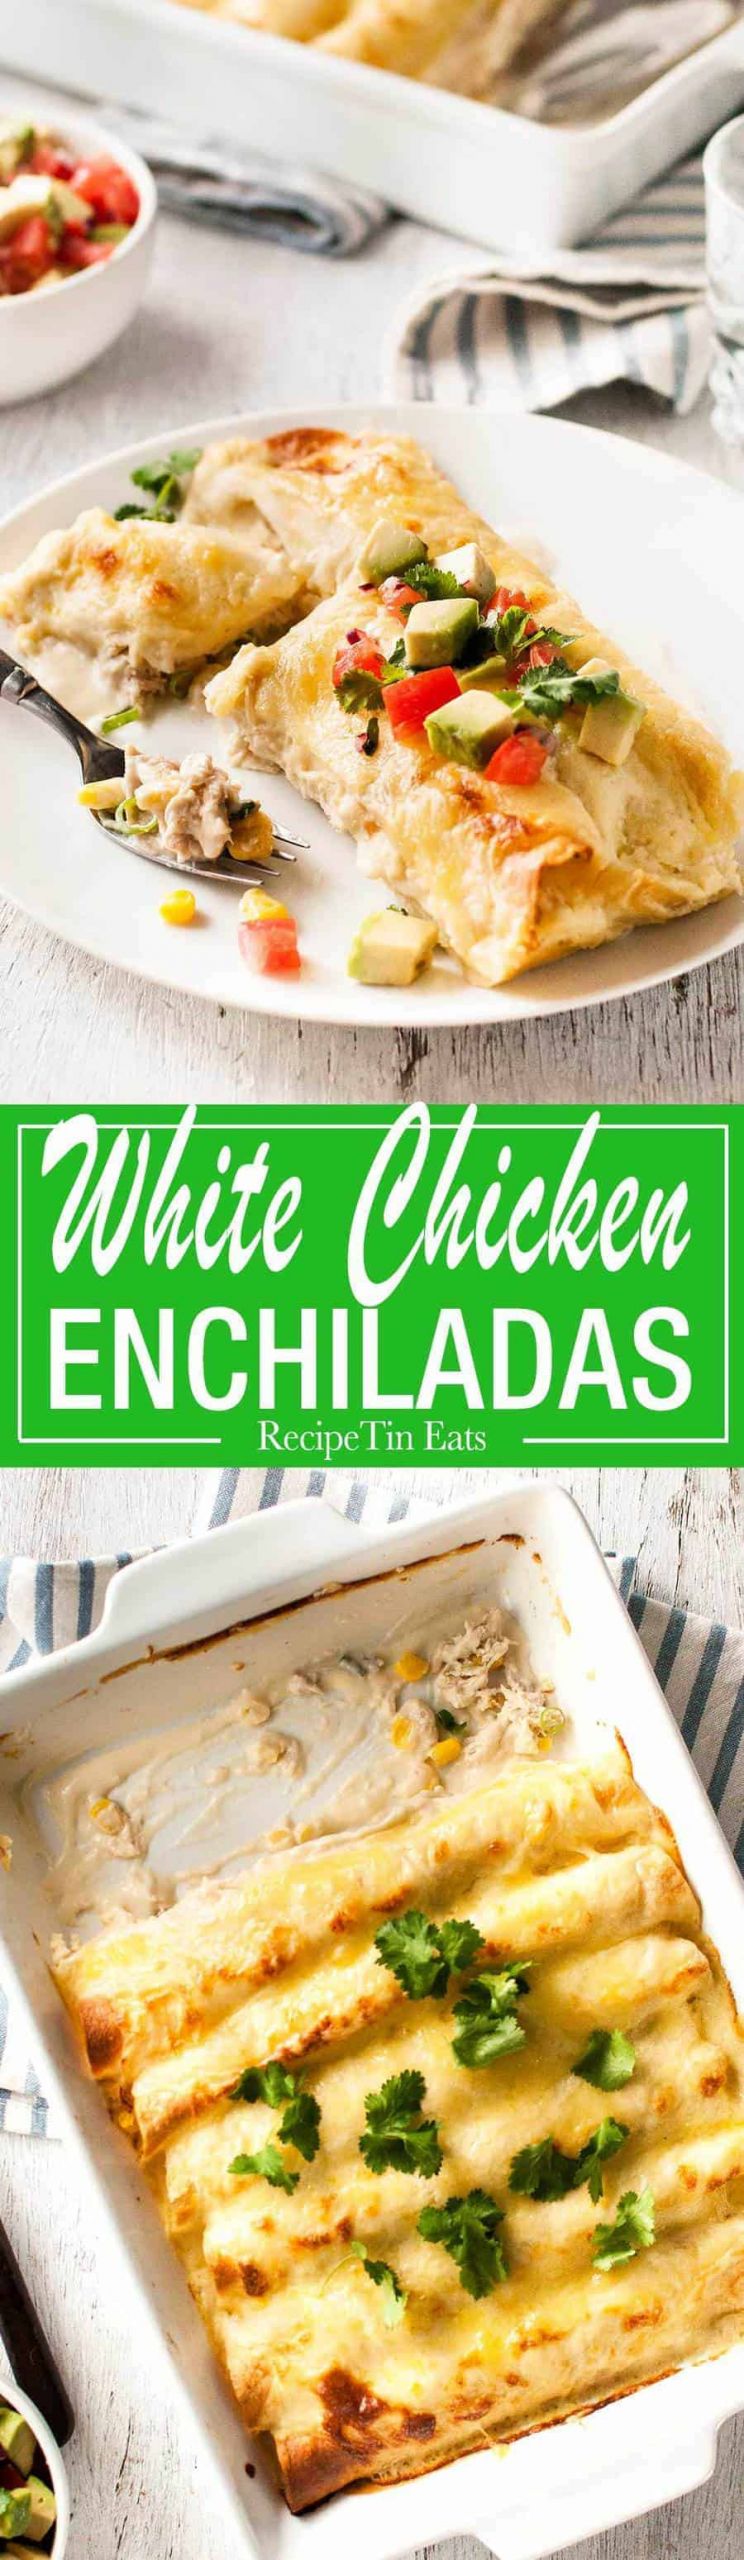 White Sauce Chicken Enchiladas
 Creamy White Chicken Enchiladas